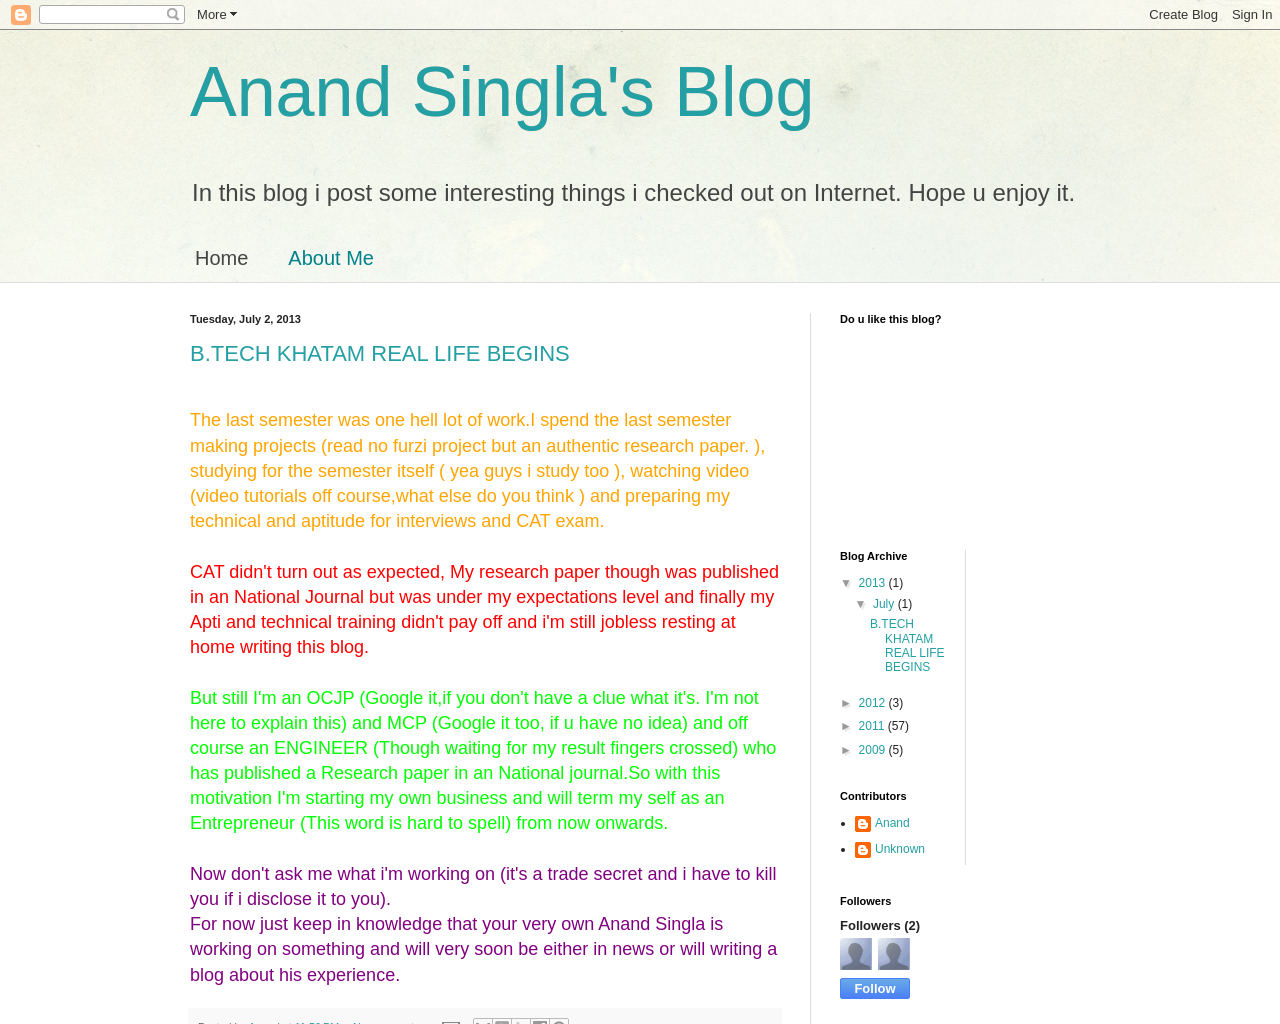  Anand Singla's Blog